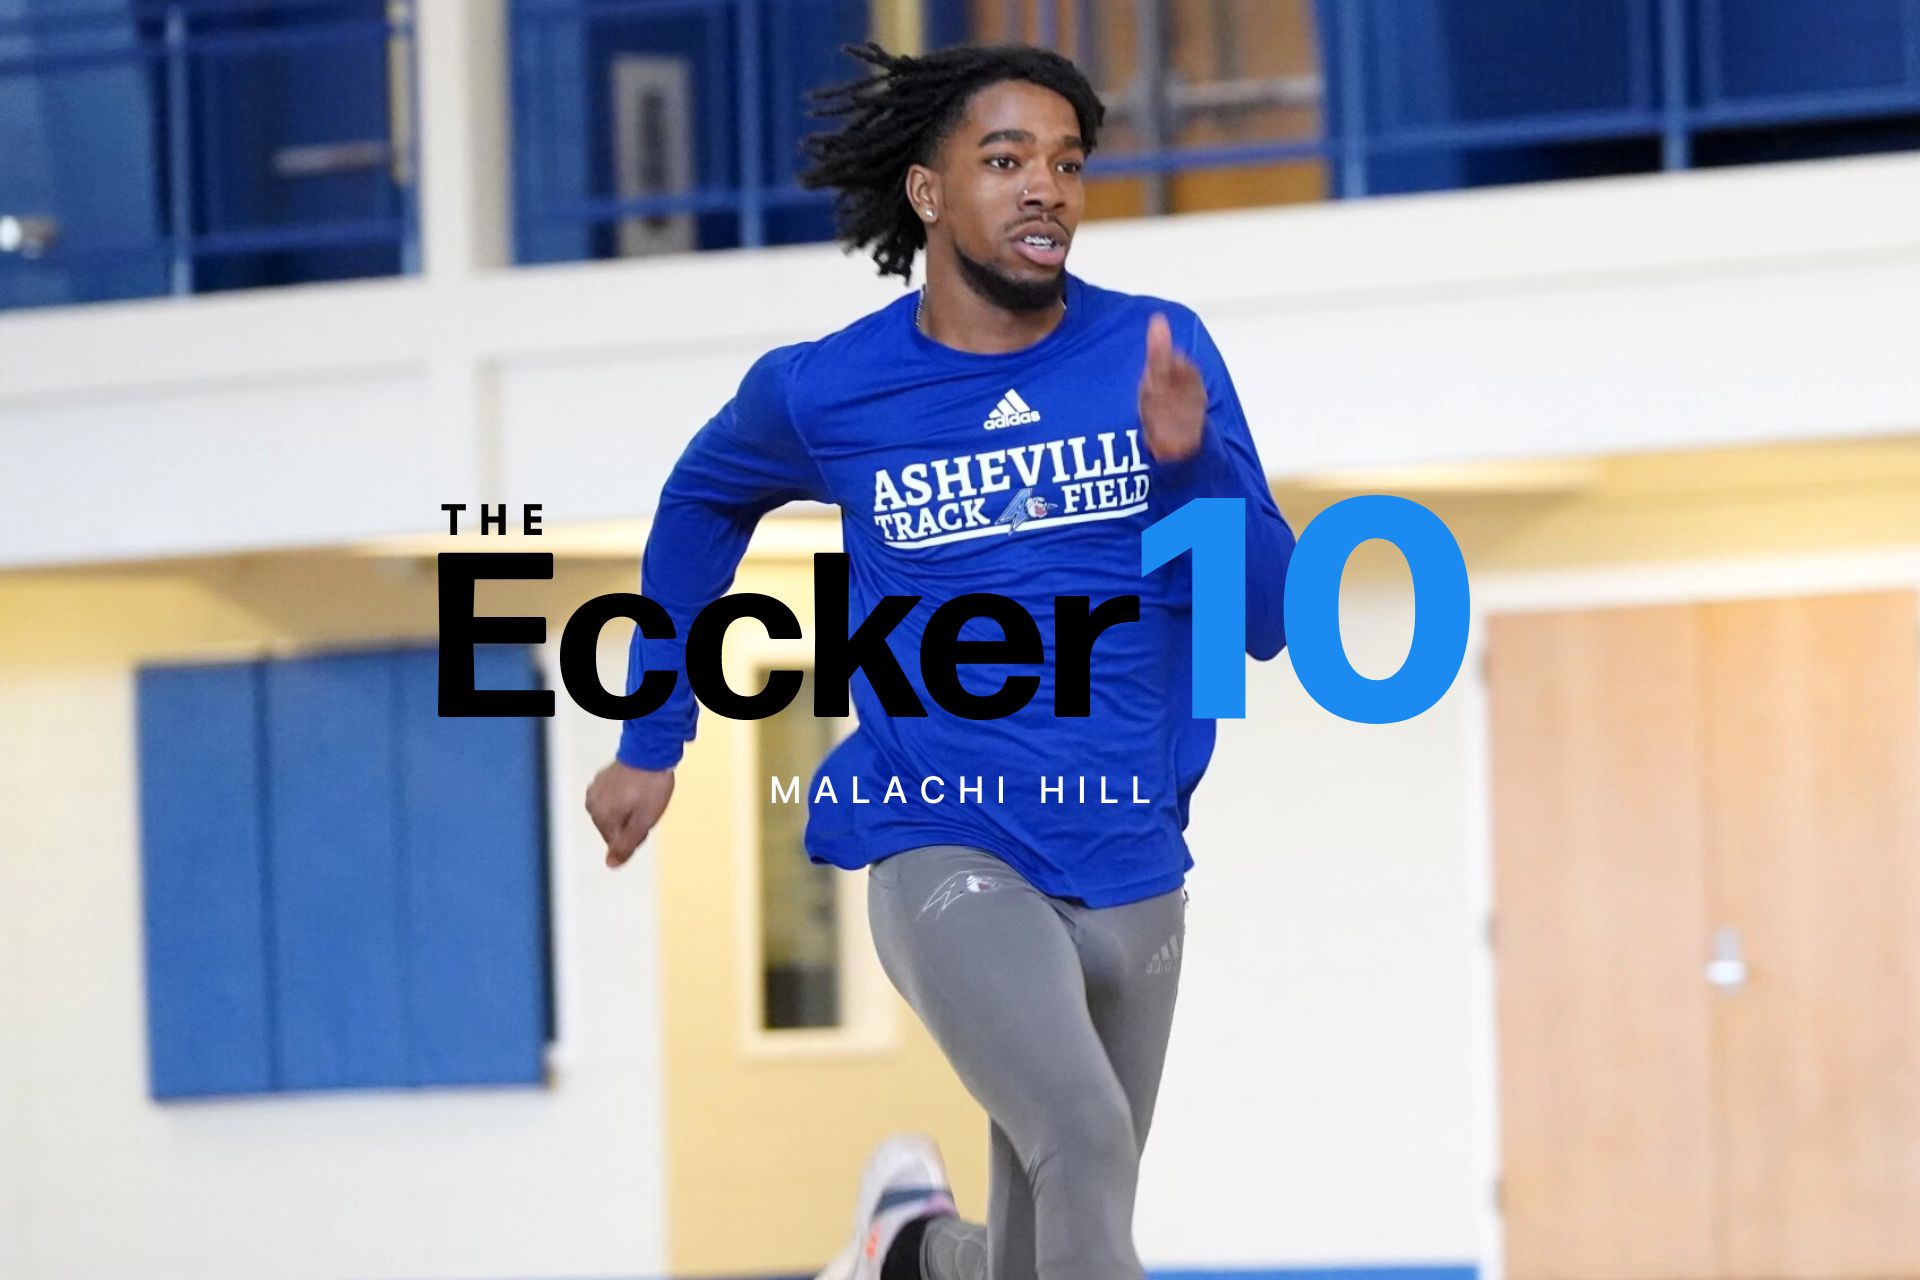 The Eccker 10 - Malachi Hill